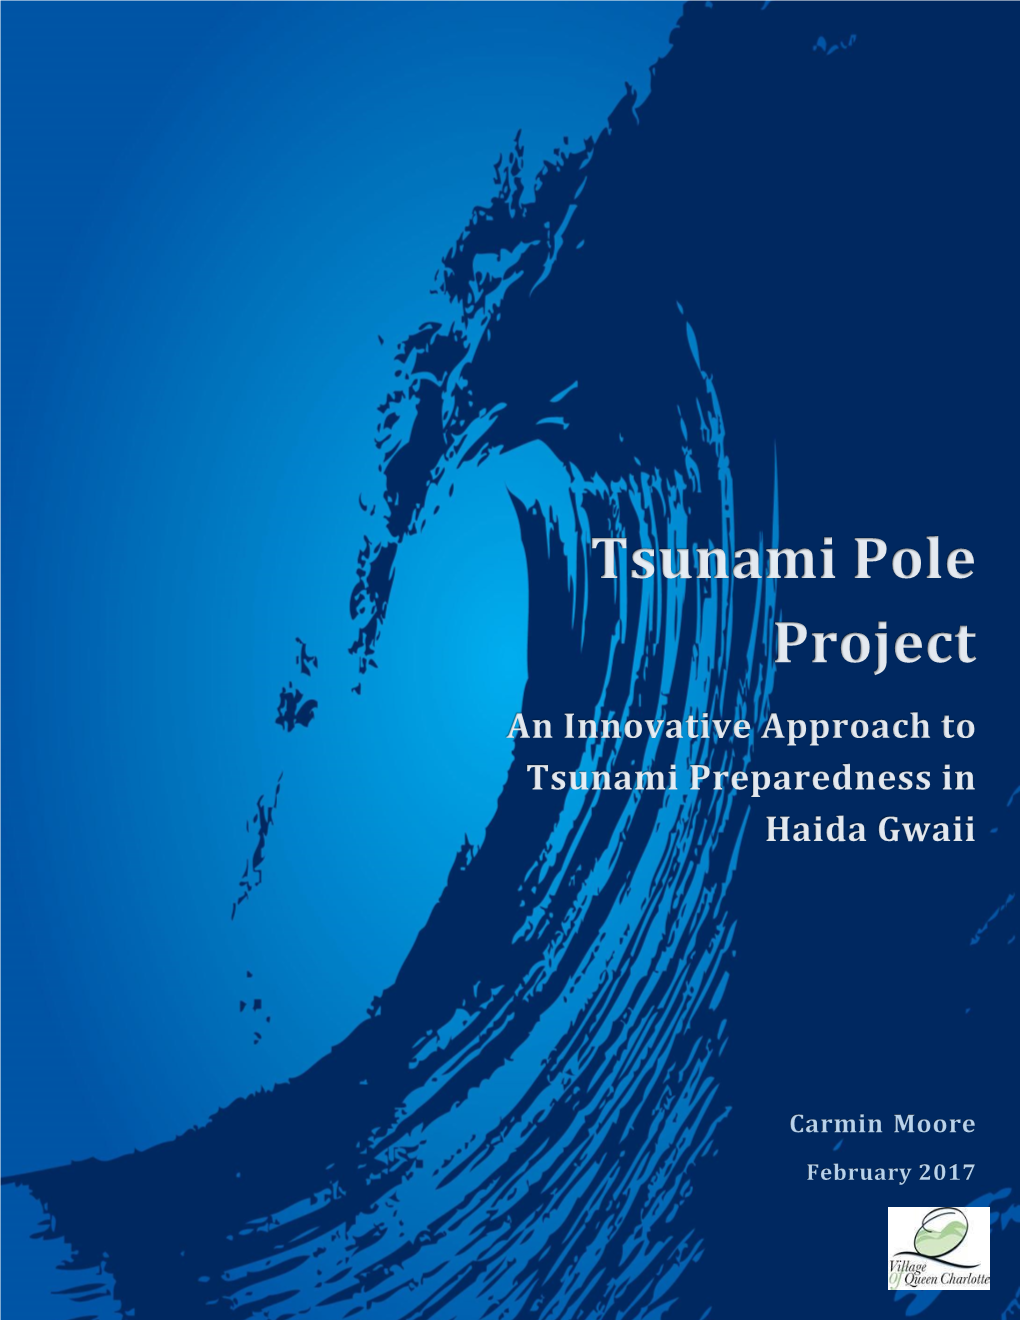 The Tsunami Pole Project Report